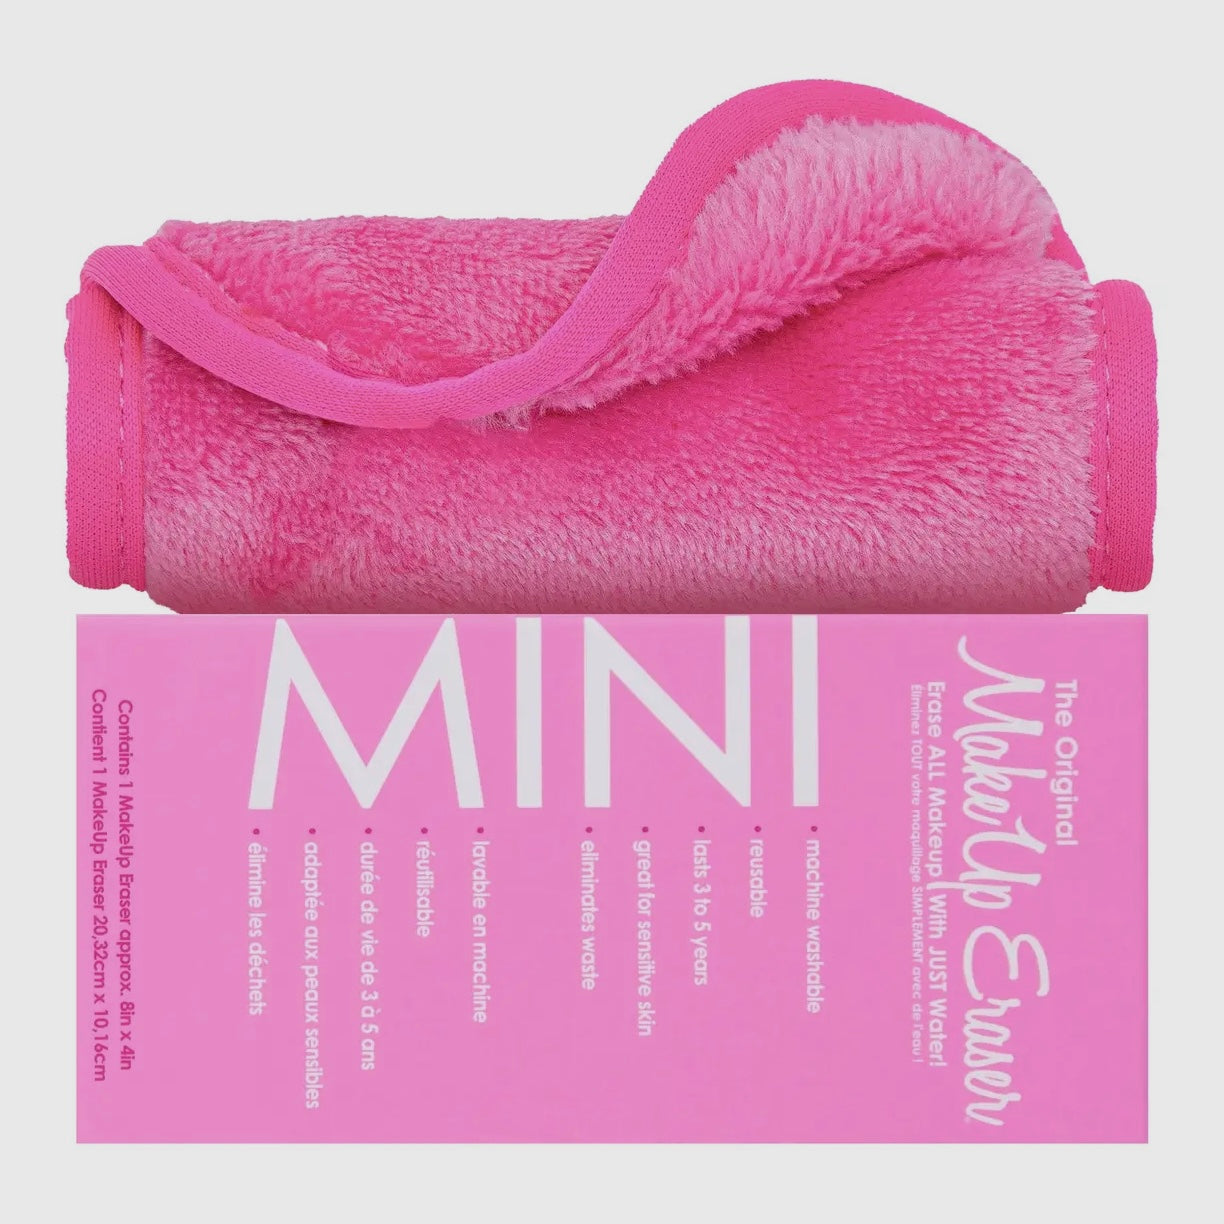 Mini Makeup Eraser